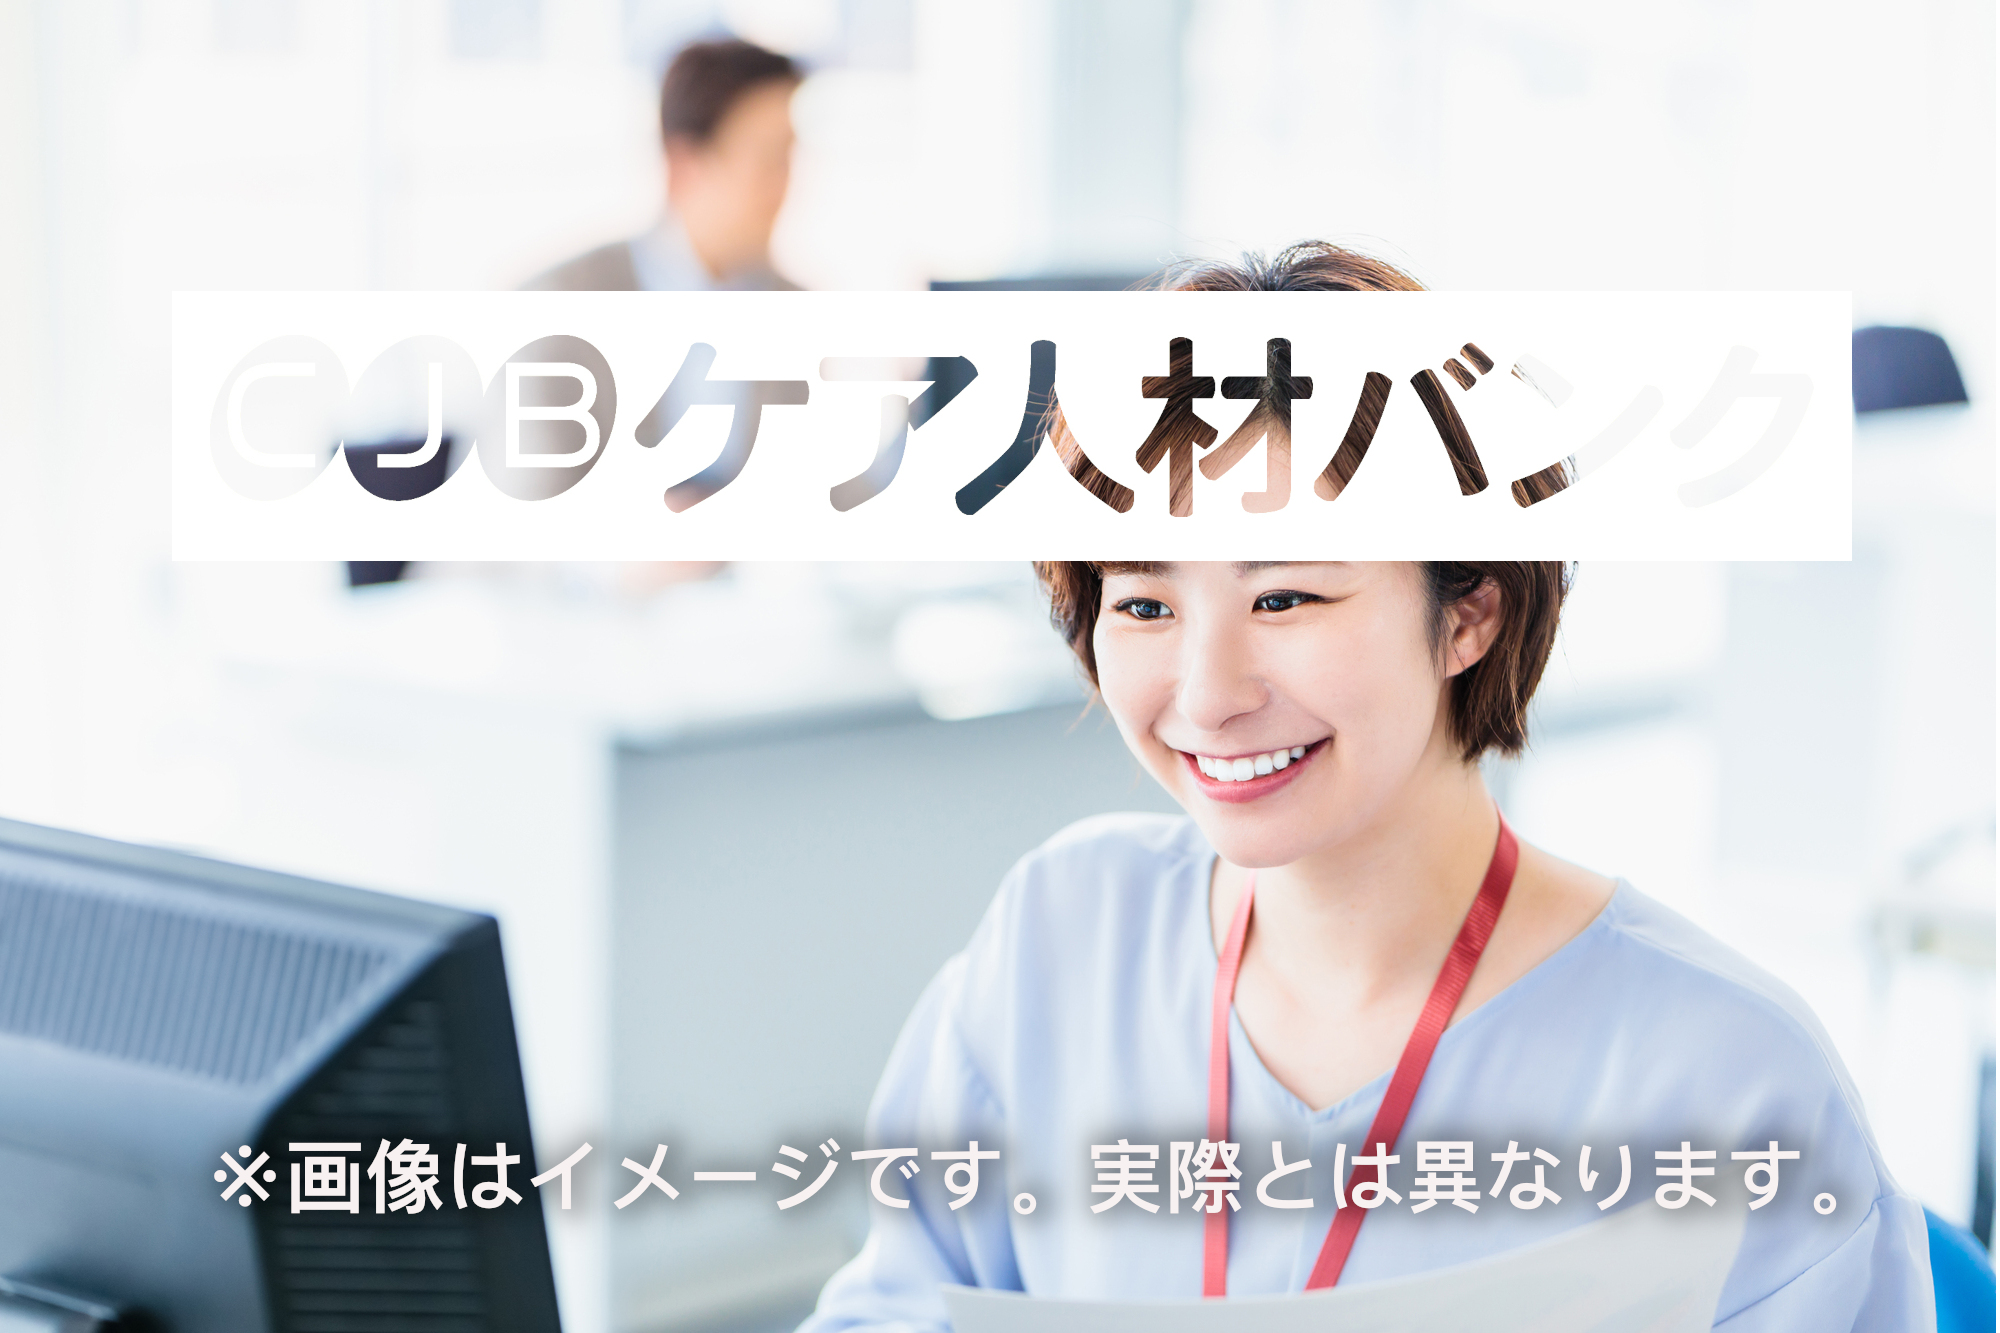 新潟県新潟市中央区・有料/居宅・常勤 の非公開求人情報(C41101)のイメージ画像